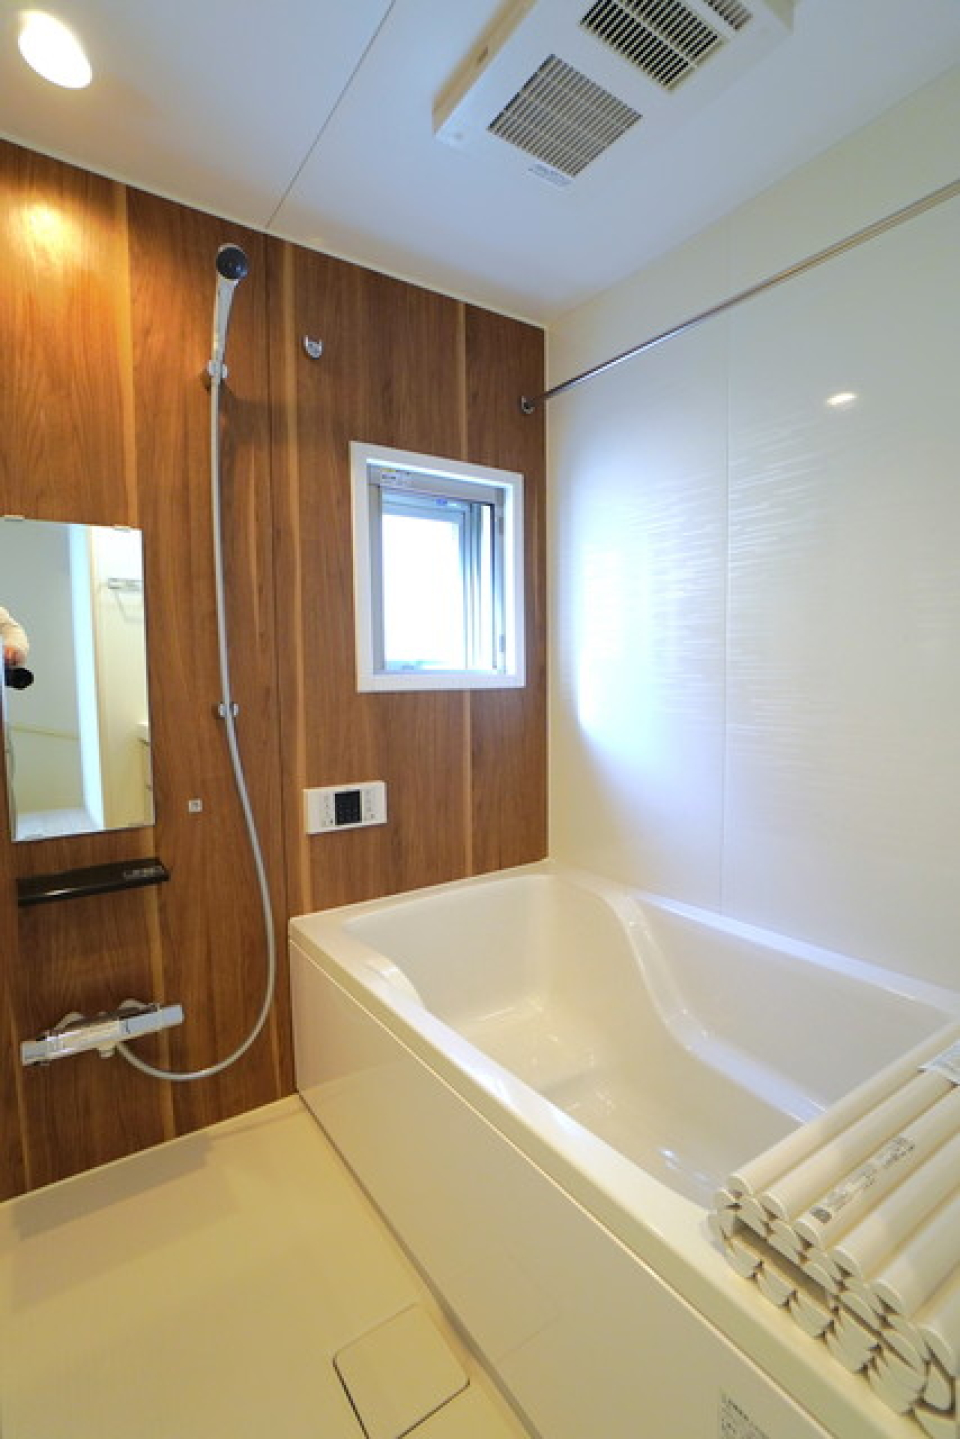 ナチュラルなパネルが導入されている浴室です。※写真は同タイプ住戸です。